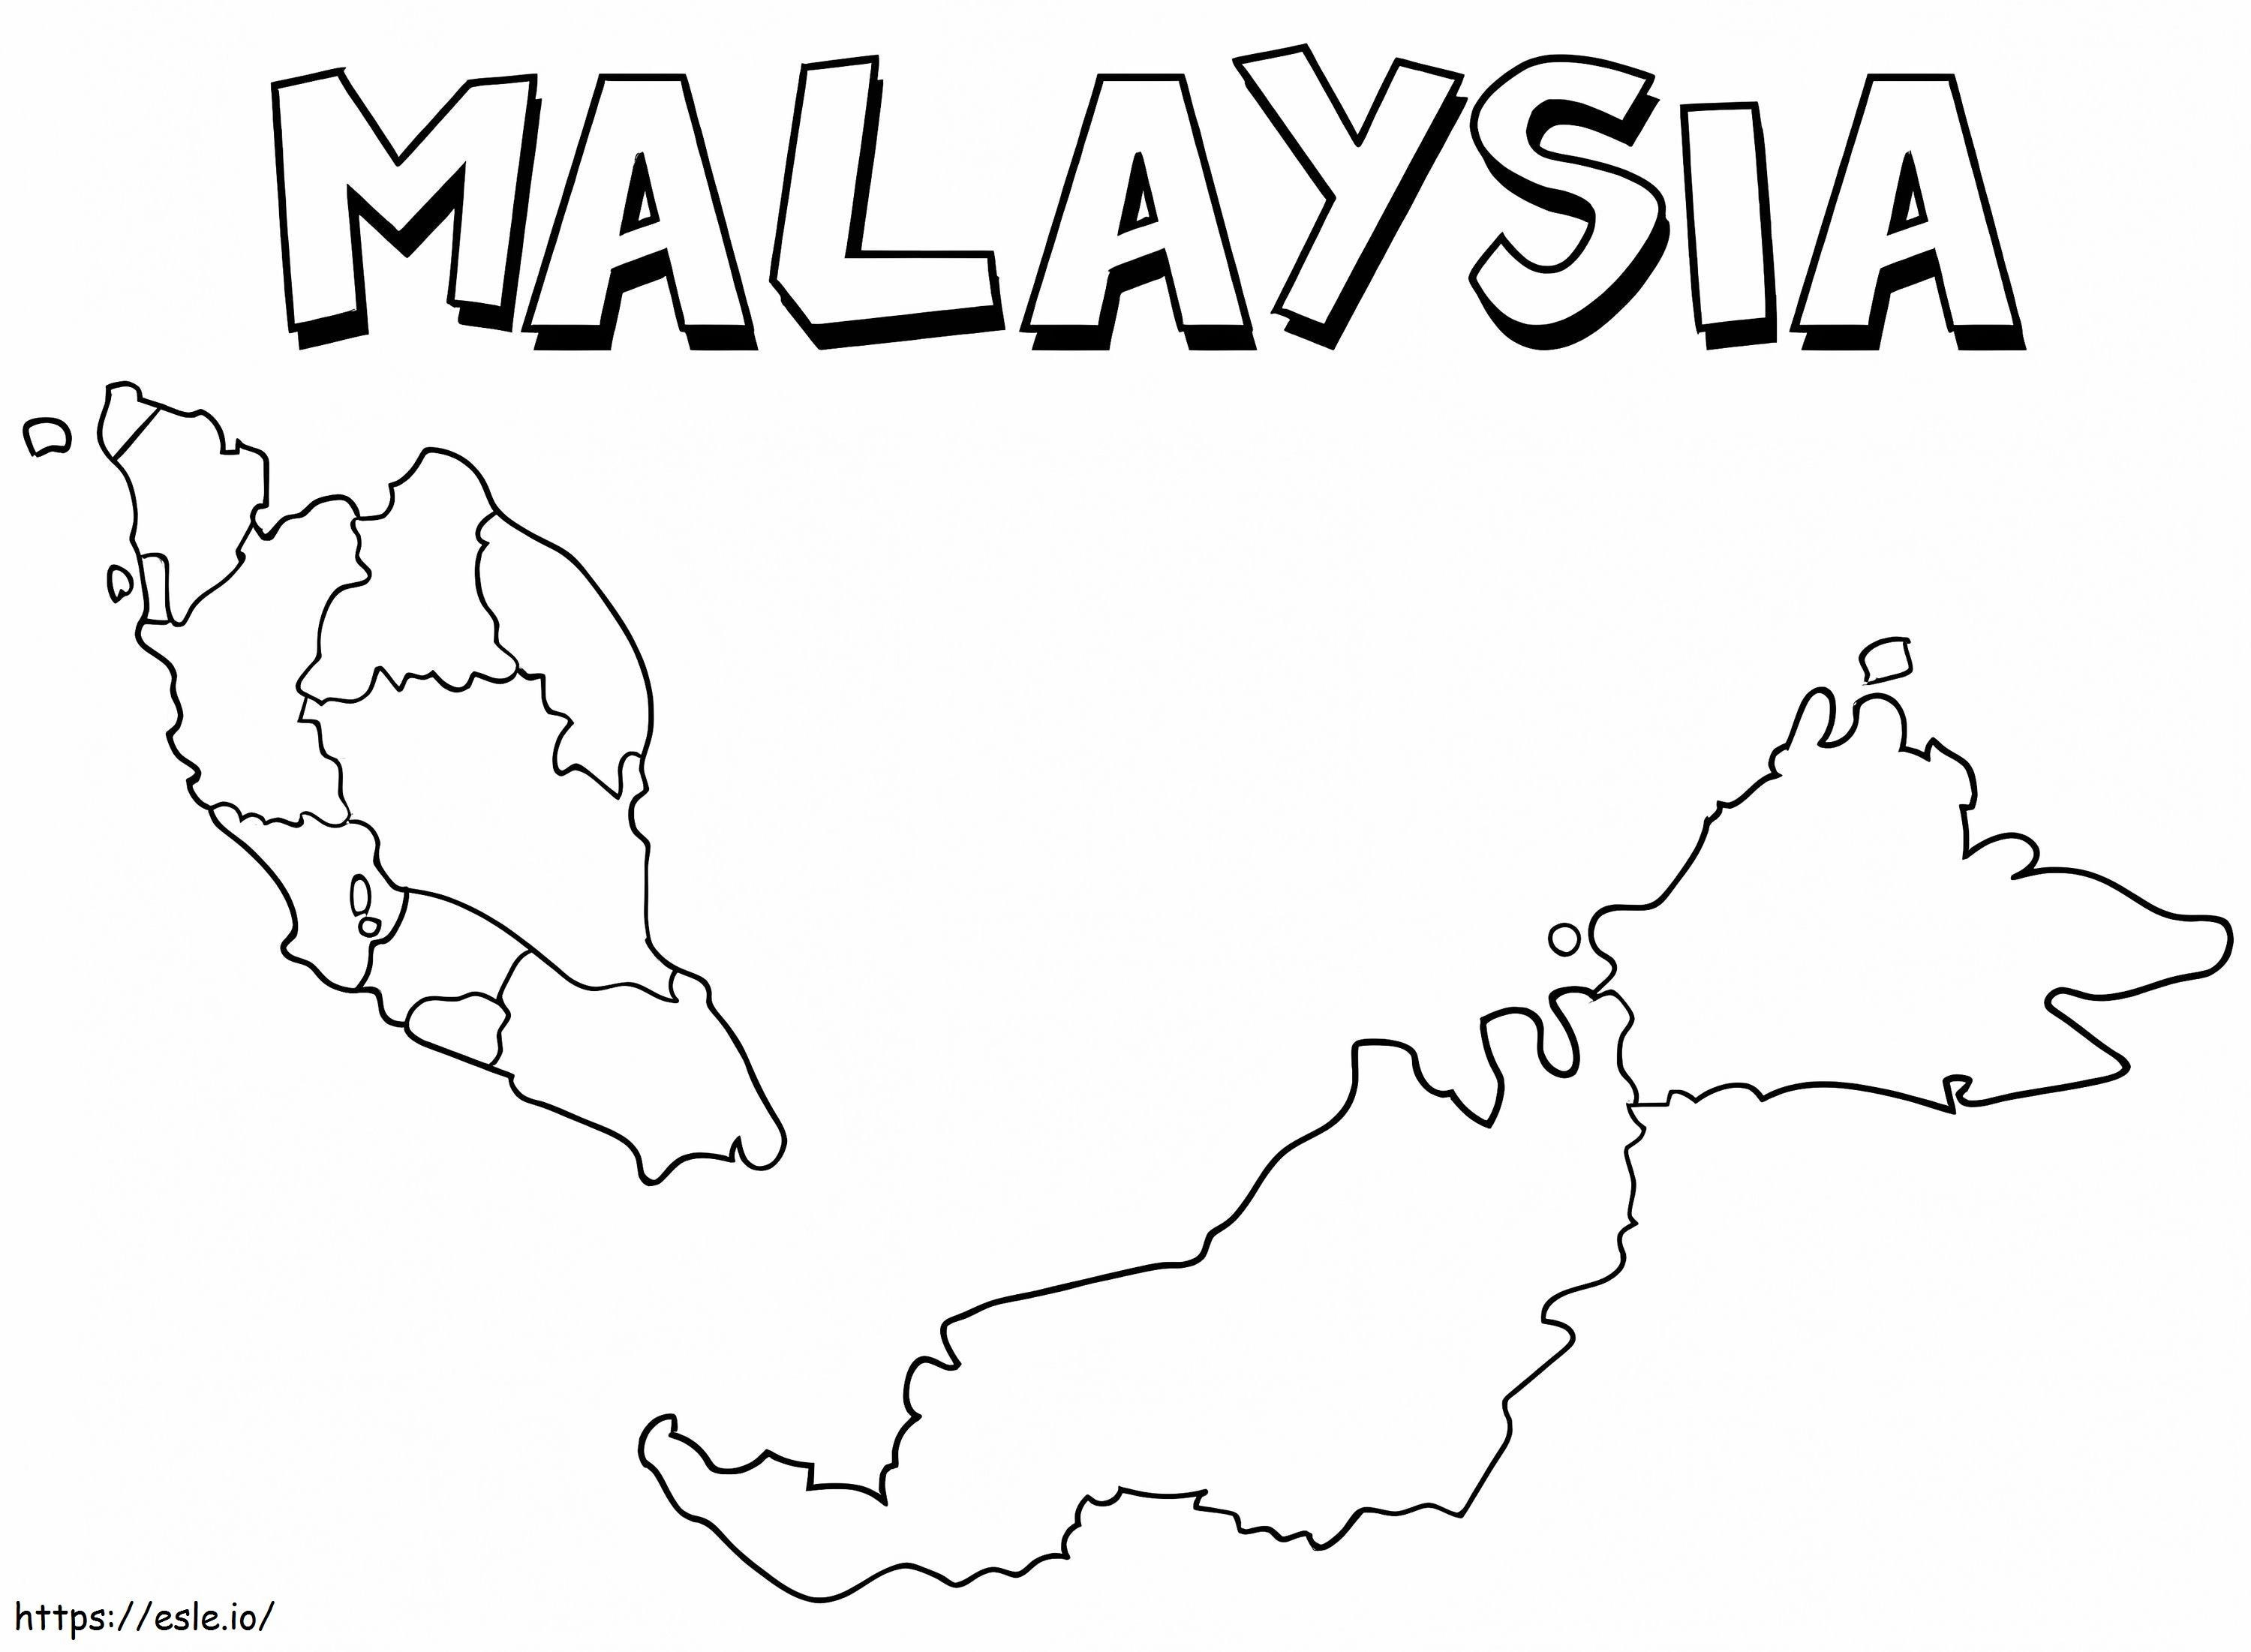 Coloriage Malaisie Carte 1 à imprimer dessin